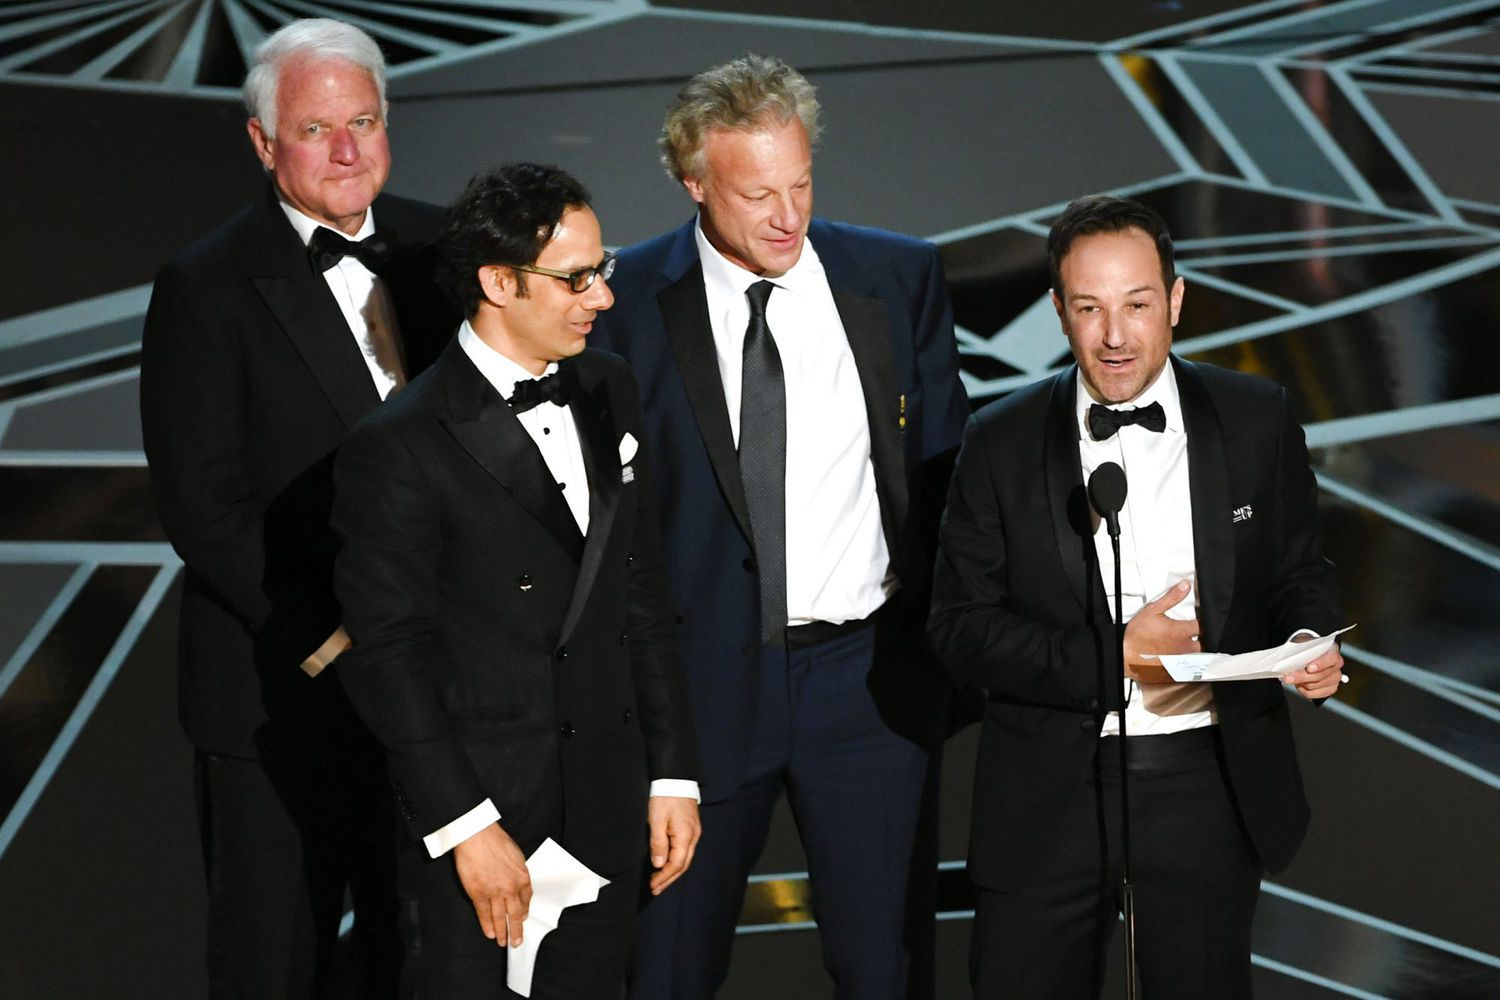 90th Annual Academy Awards - Show